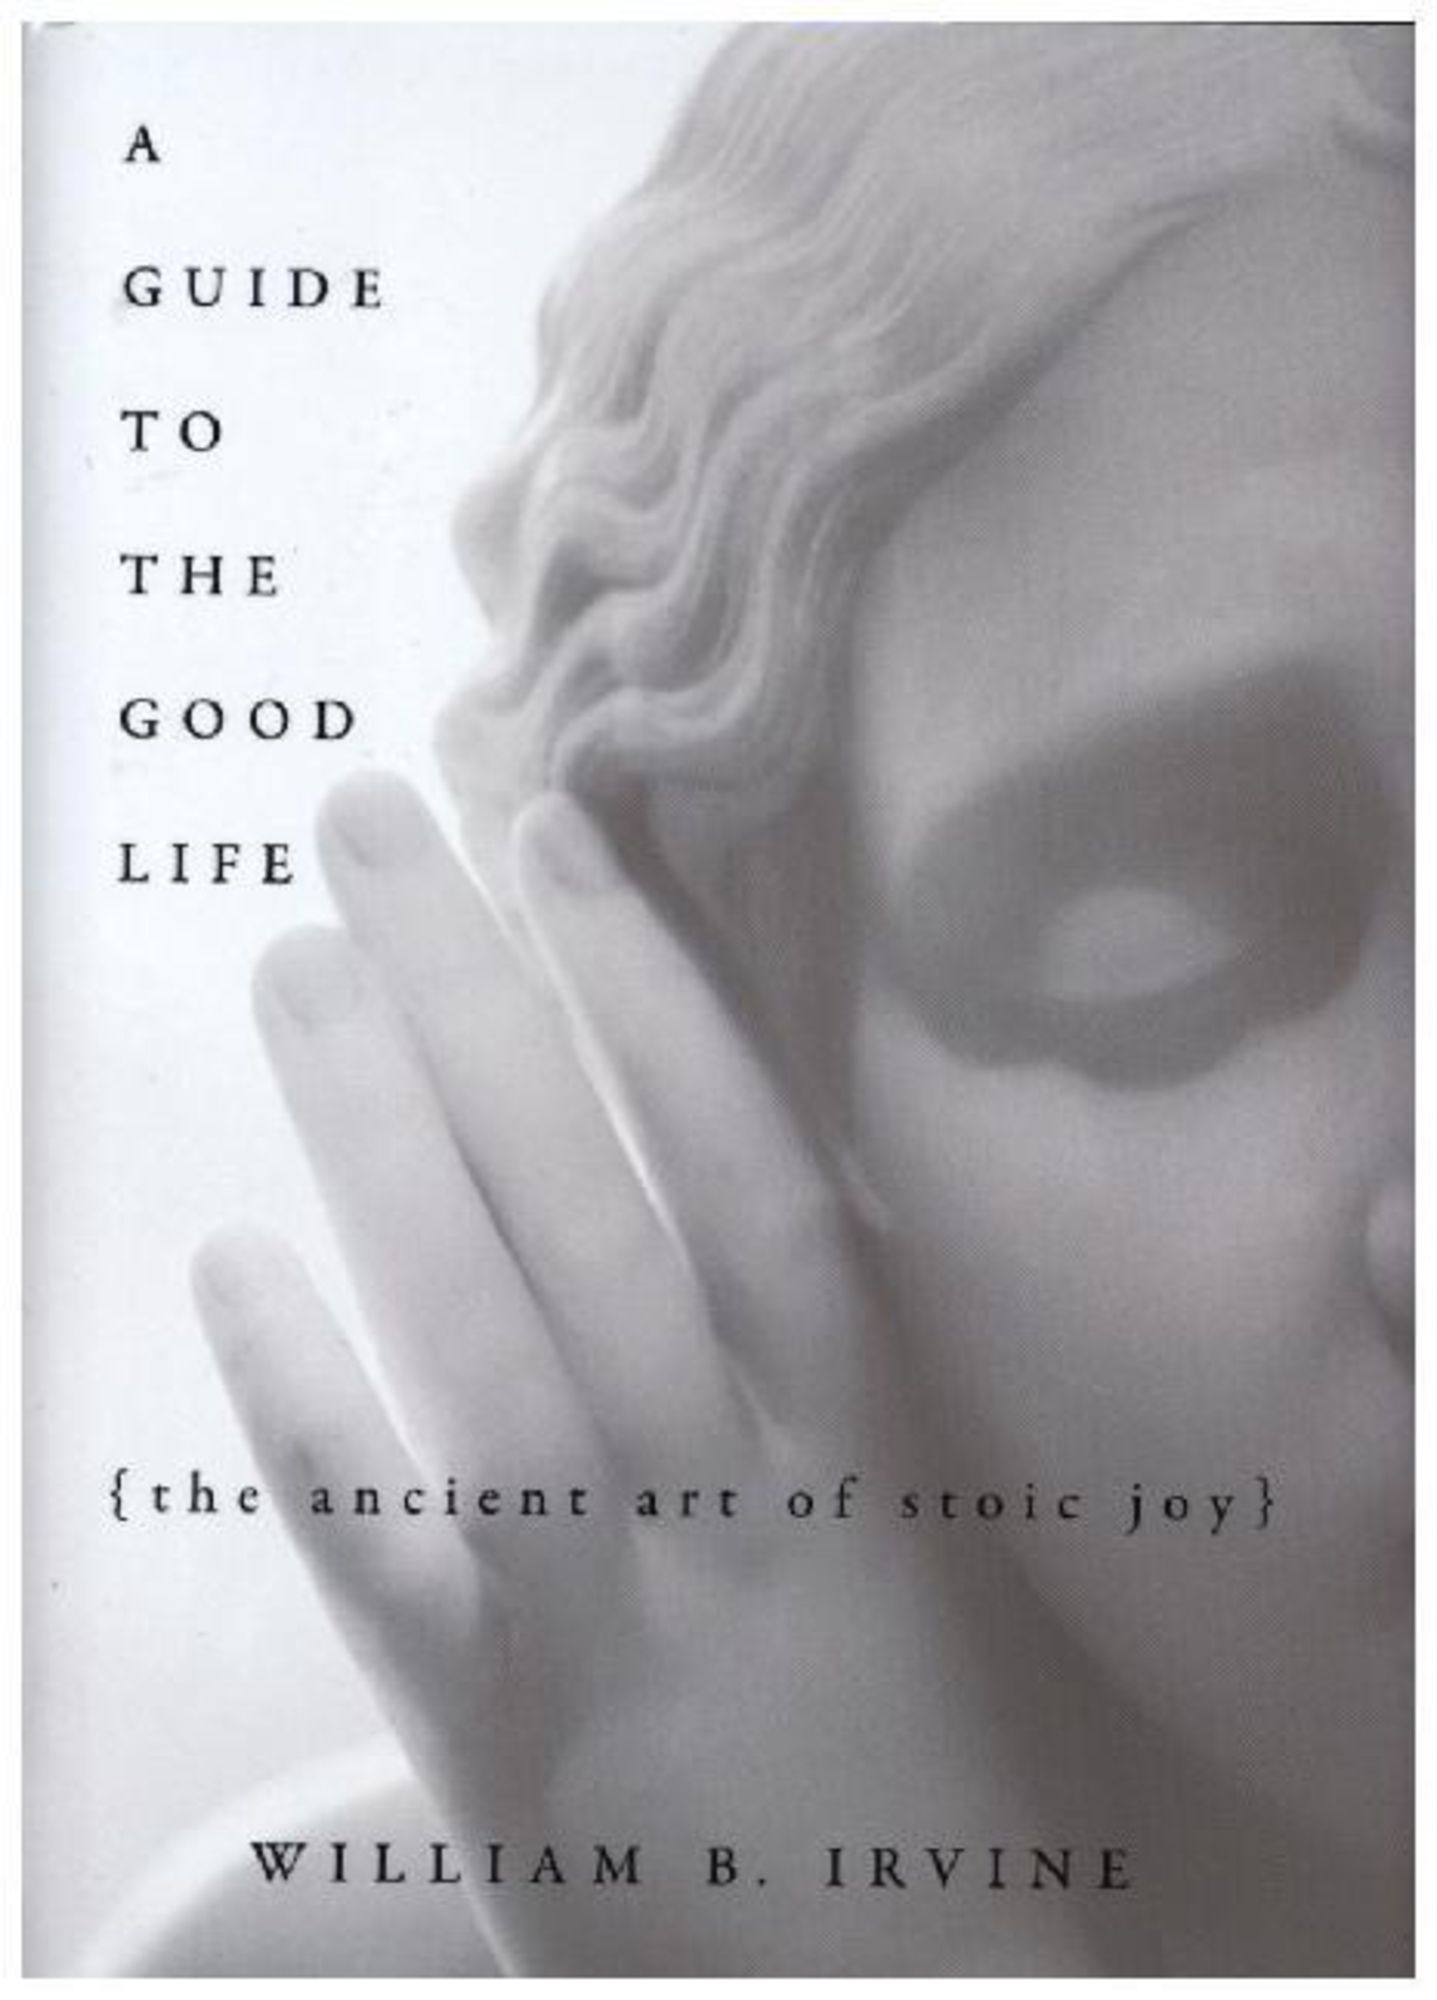 A Guide to the Good Life' von 'William B. Irvine' 'Gebundene Ausgabe'  '978-0-19-537461-2'